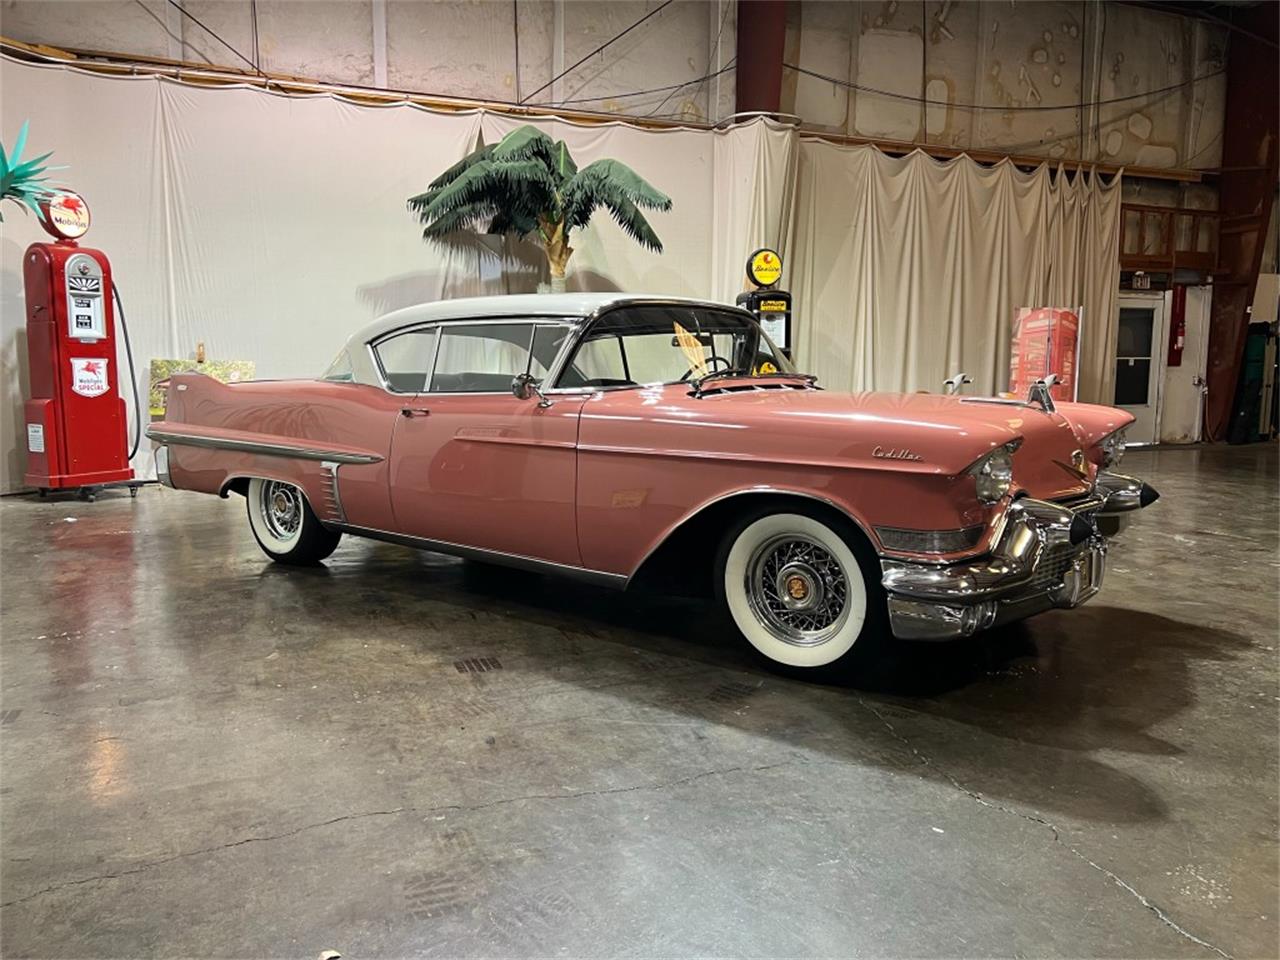 For Sale: 1957 Cadillac Series 62 in Atlanta, Georgia for sale in Atlanta, GA